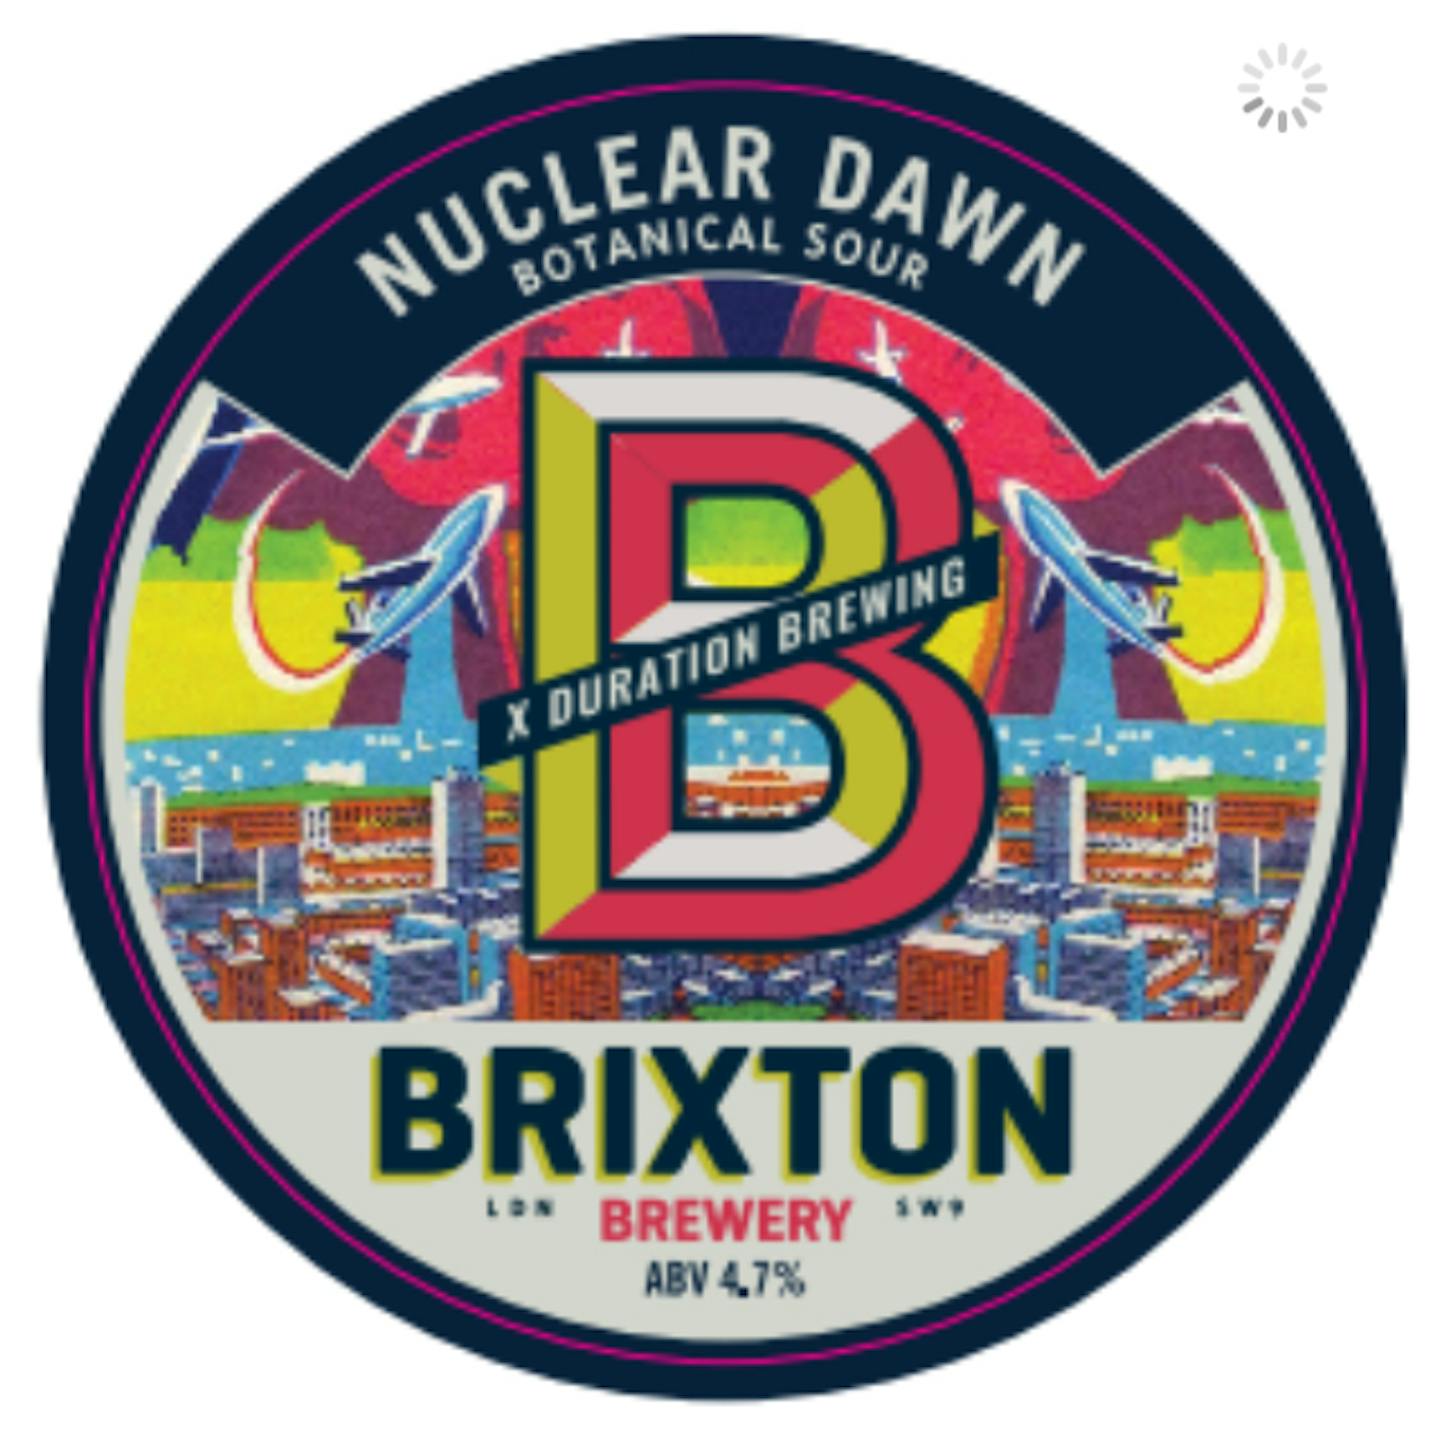 2 Brixton x Duration Nuclear Dawn